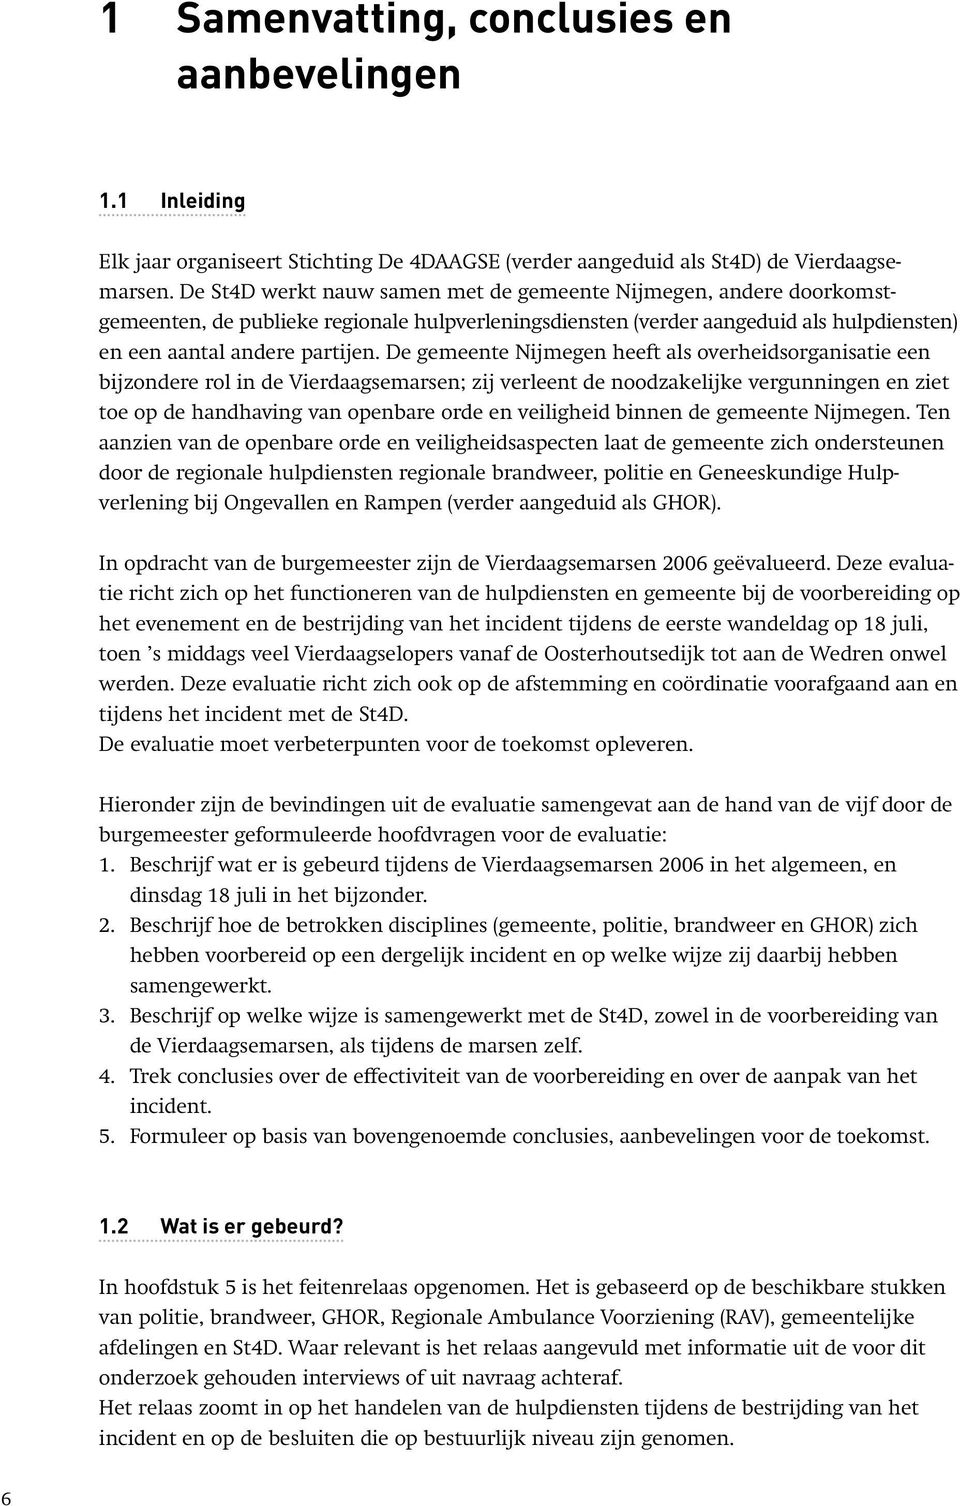 De gemeente Nijmegen heeft als overheidsorganisatie een bijzondere rol in de Vierdaagsemarsen; zij verleent de noodzakelijke vergunningen en ziet toe op de handhaving van openbare orde en veiligheid